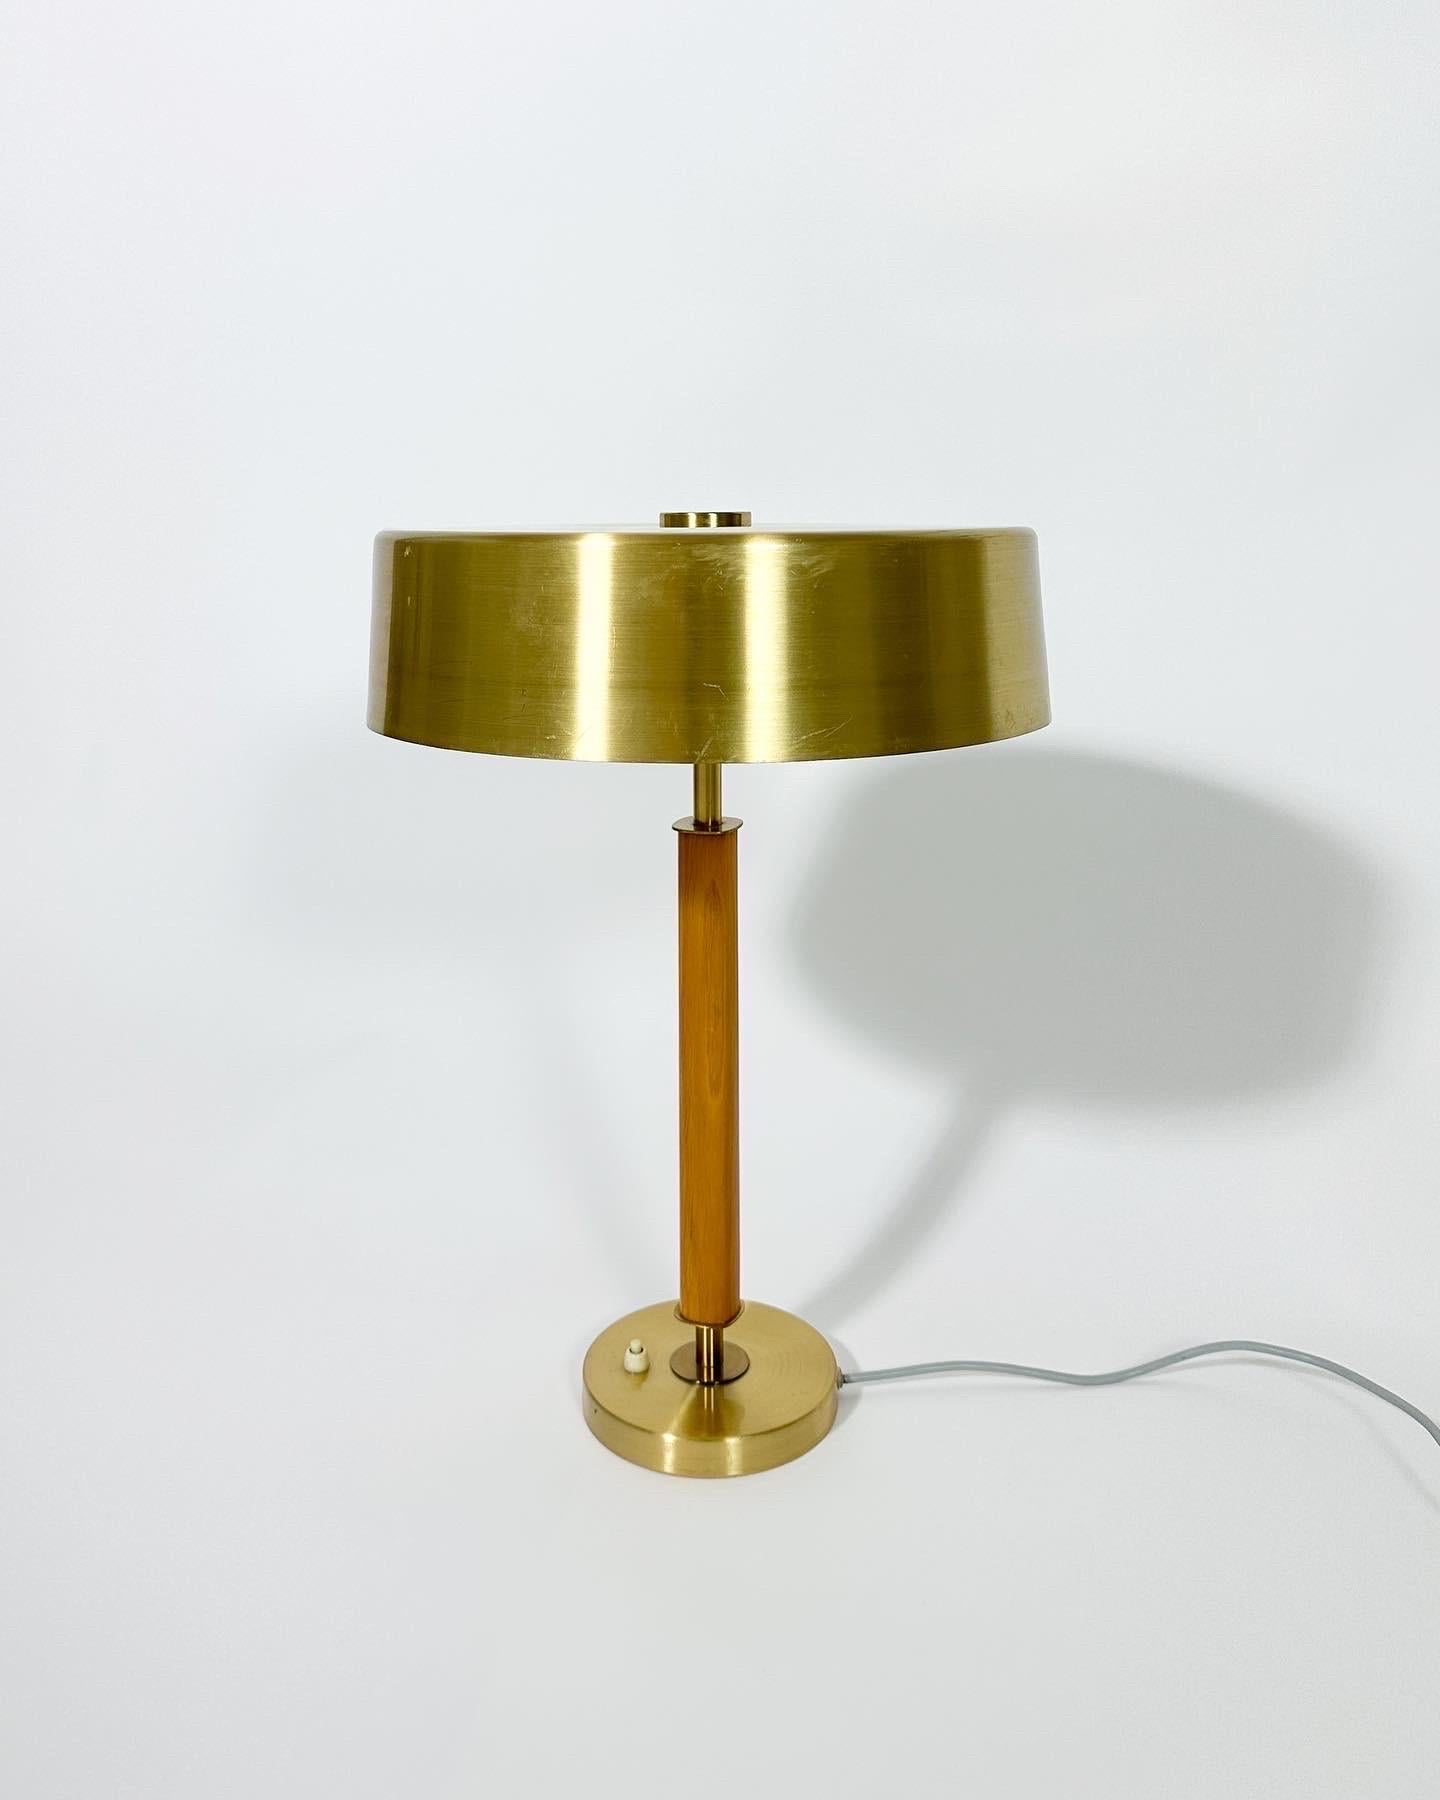 Lampe de table élégante, aux lignes épurées, fabriquée par la société suédoise d'éclairage Boréns dans les années 1960.

Modèle n° B8449 avec un abat-jour en laiton brossé et une tige en bois contrastée. Magnifique bouton en laiton sur le dessus de